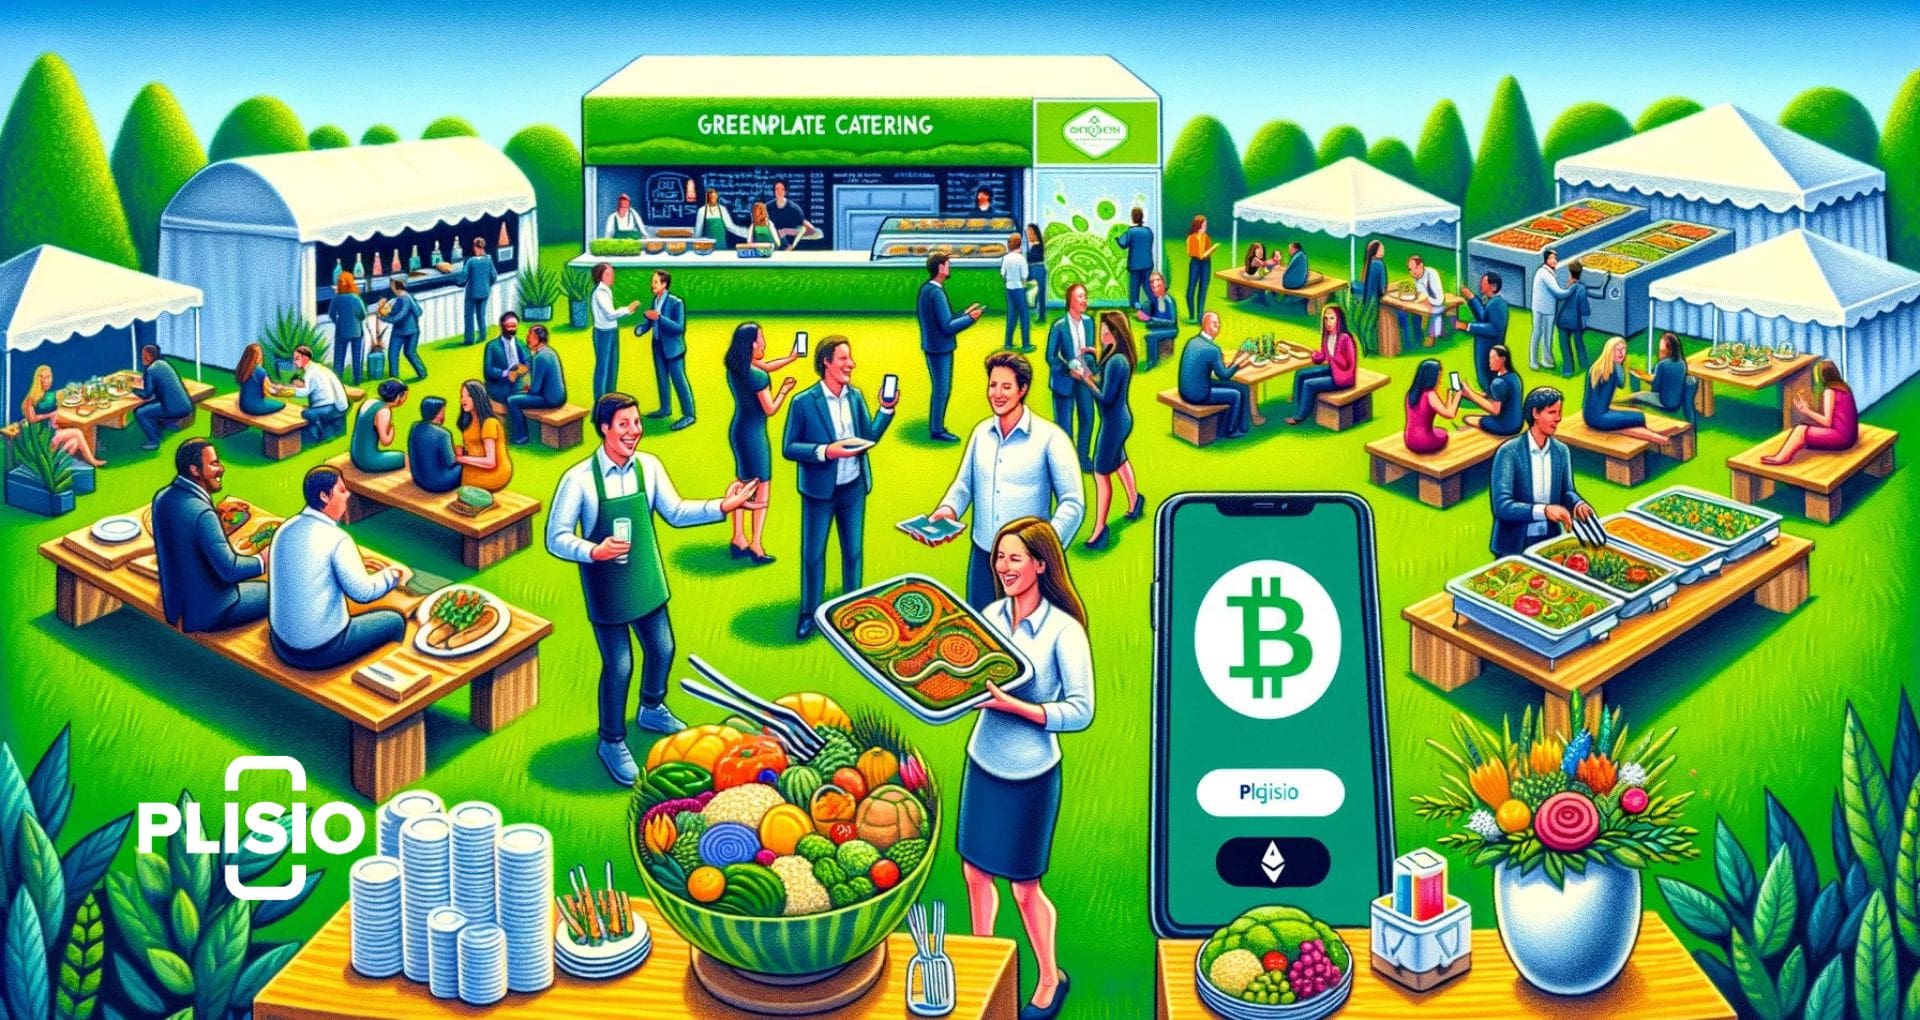 Dịch vụ ăn uống đi theo tiền điện tử: Bước nhảy vọt của GreenPlate